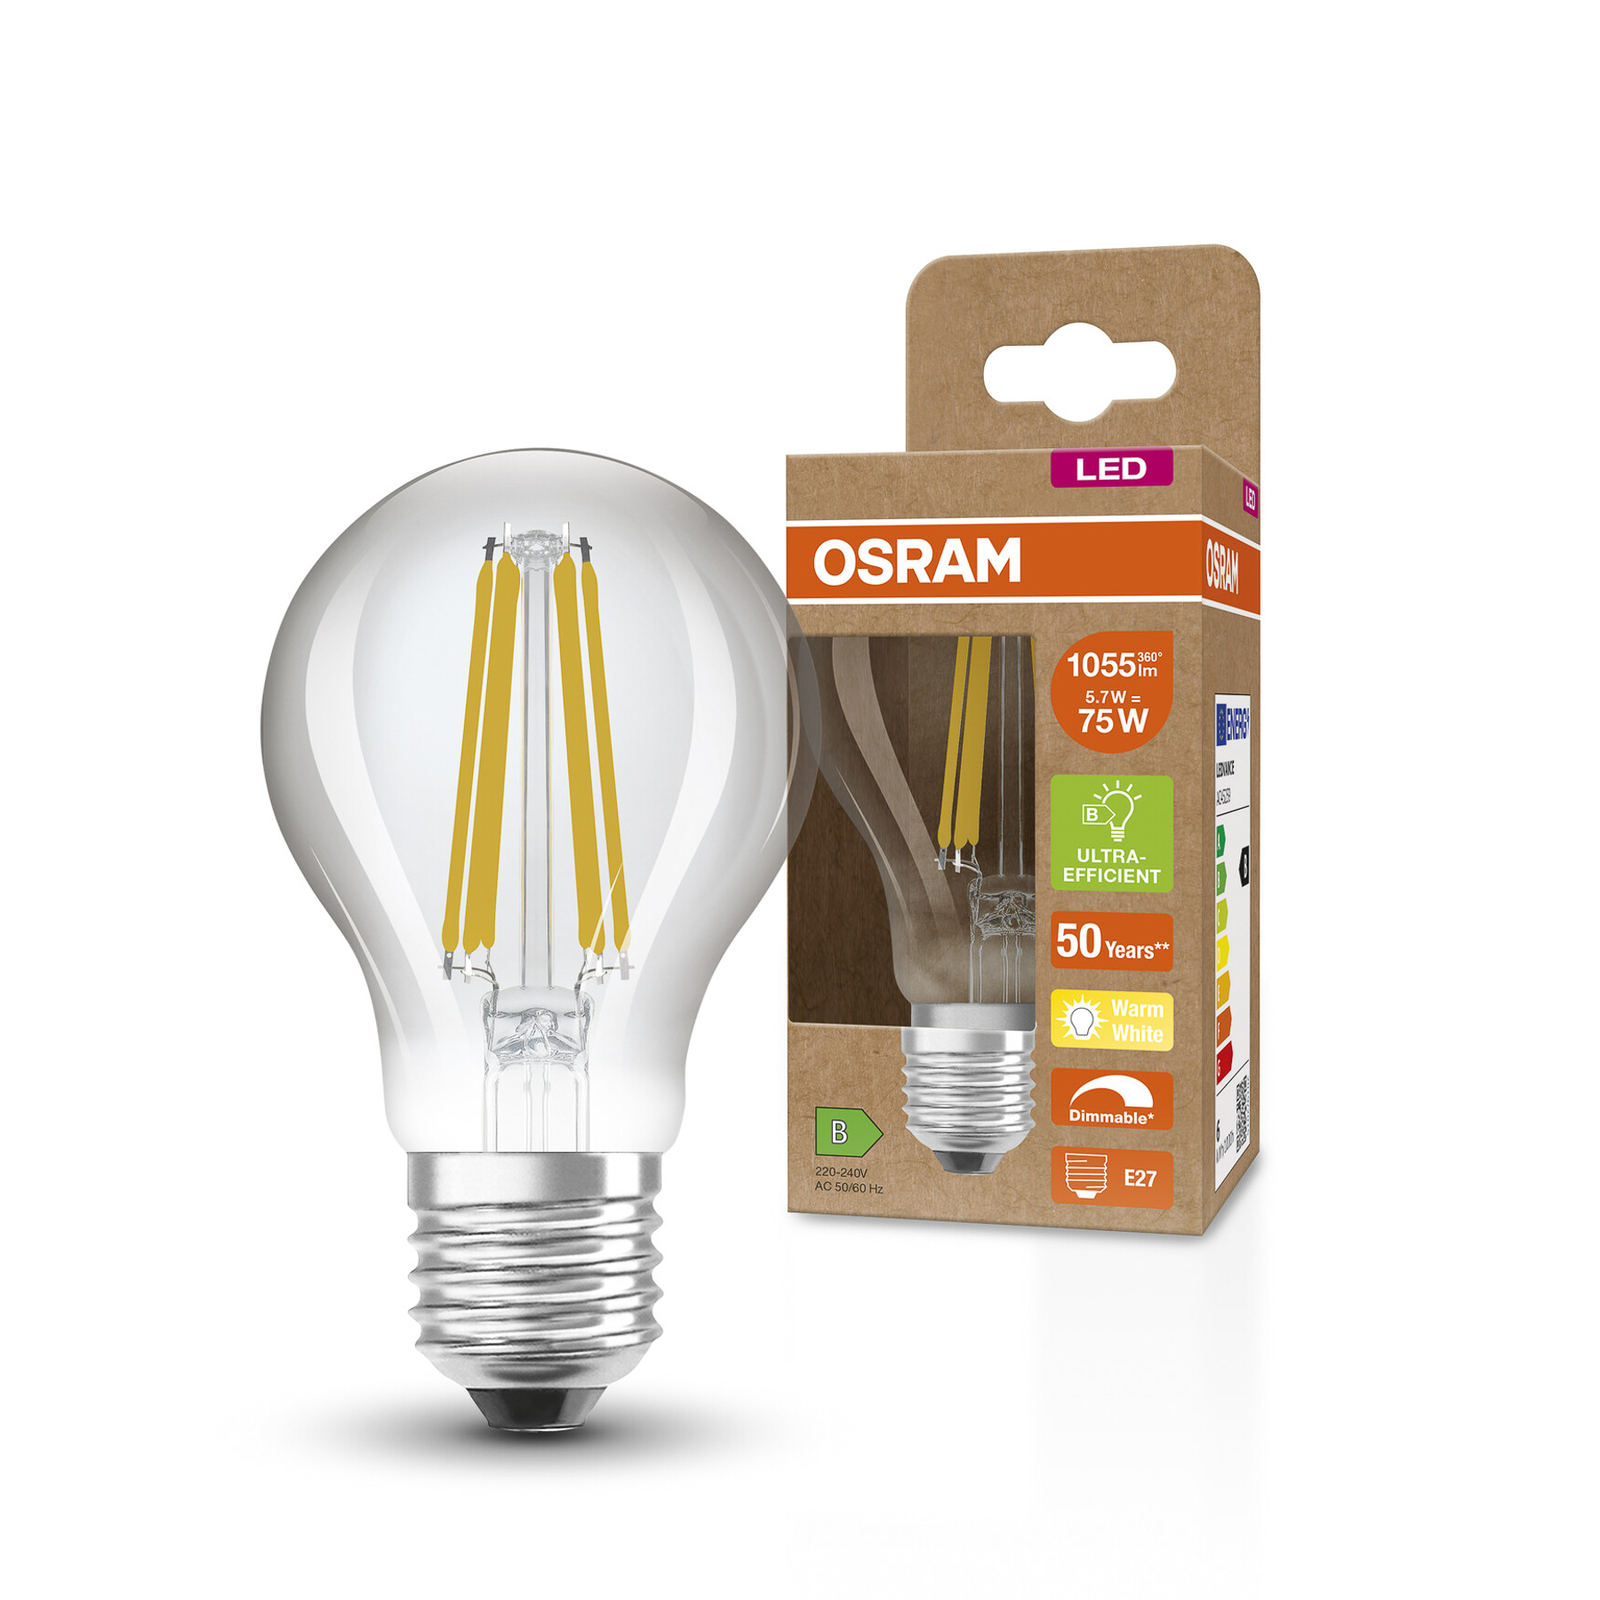 OSRAM Classic LED-Lampe E27 5,7W 827 Filament dimm